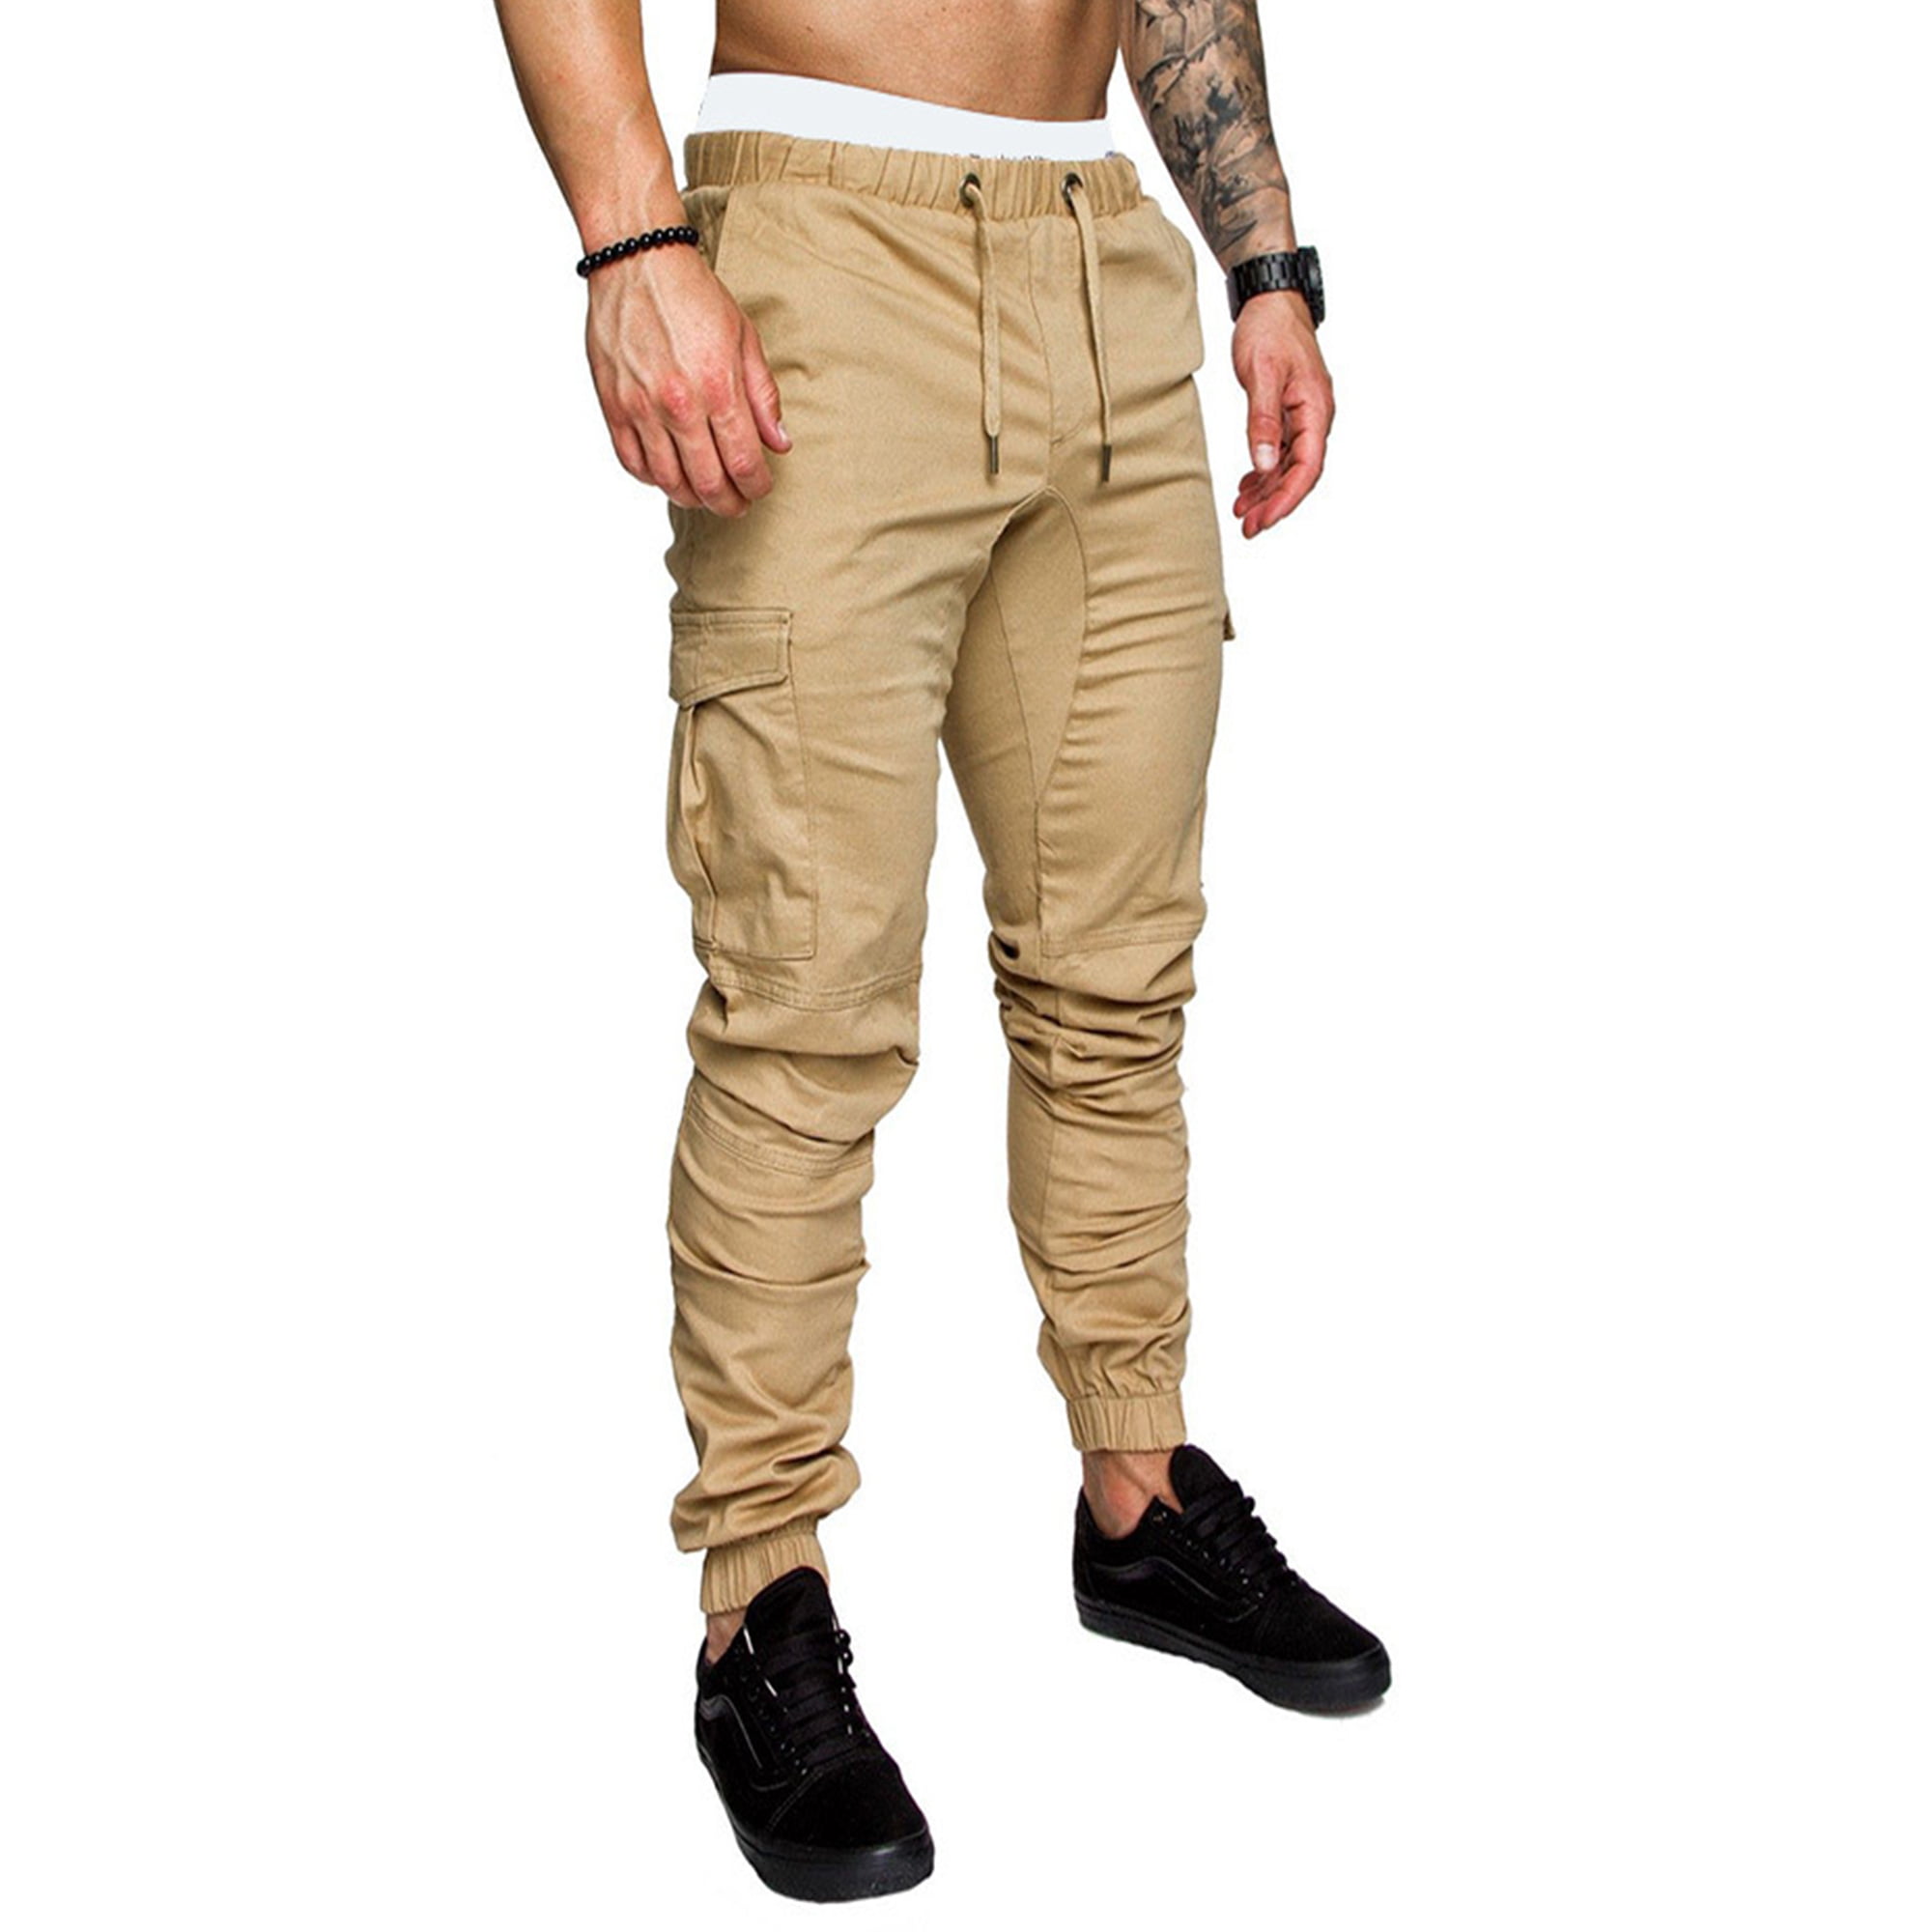 Pantalones de chándal para hombre Pantalones de chándal deportivos  Pantalones largos casuales de corte ajustado XBTCLXEBCO Caqui, Grande